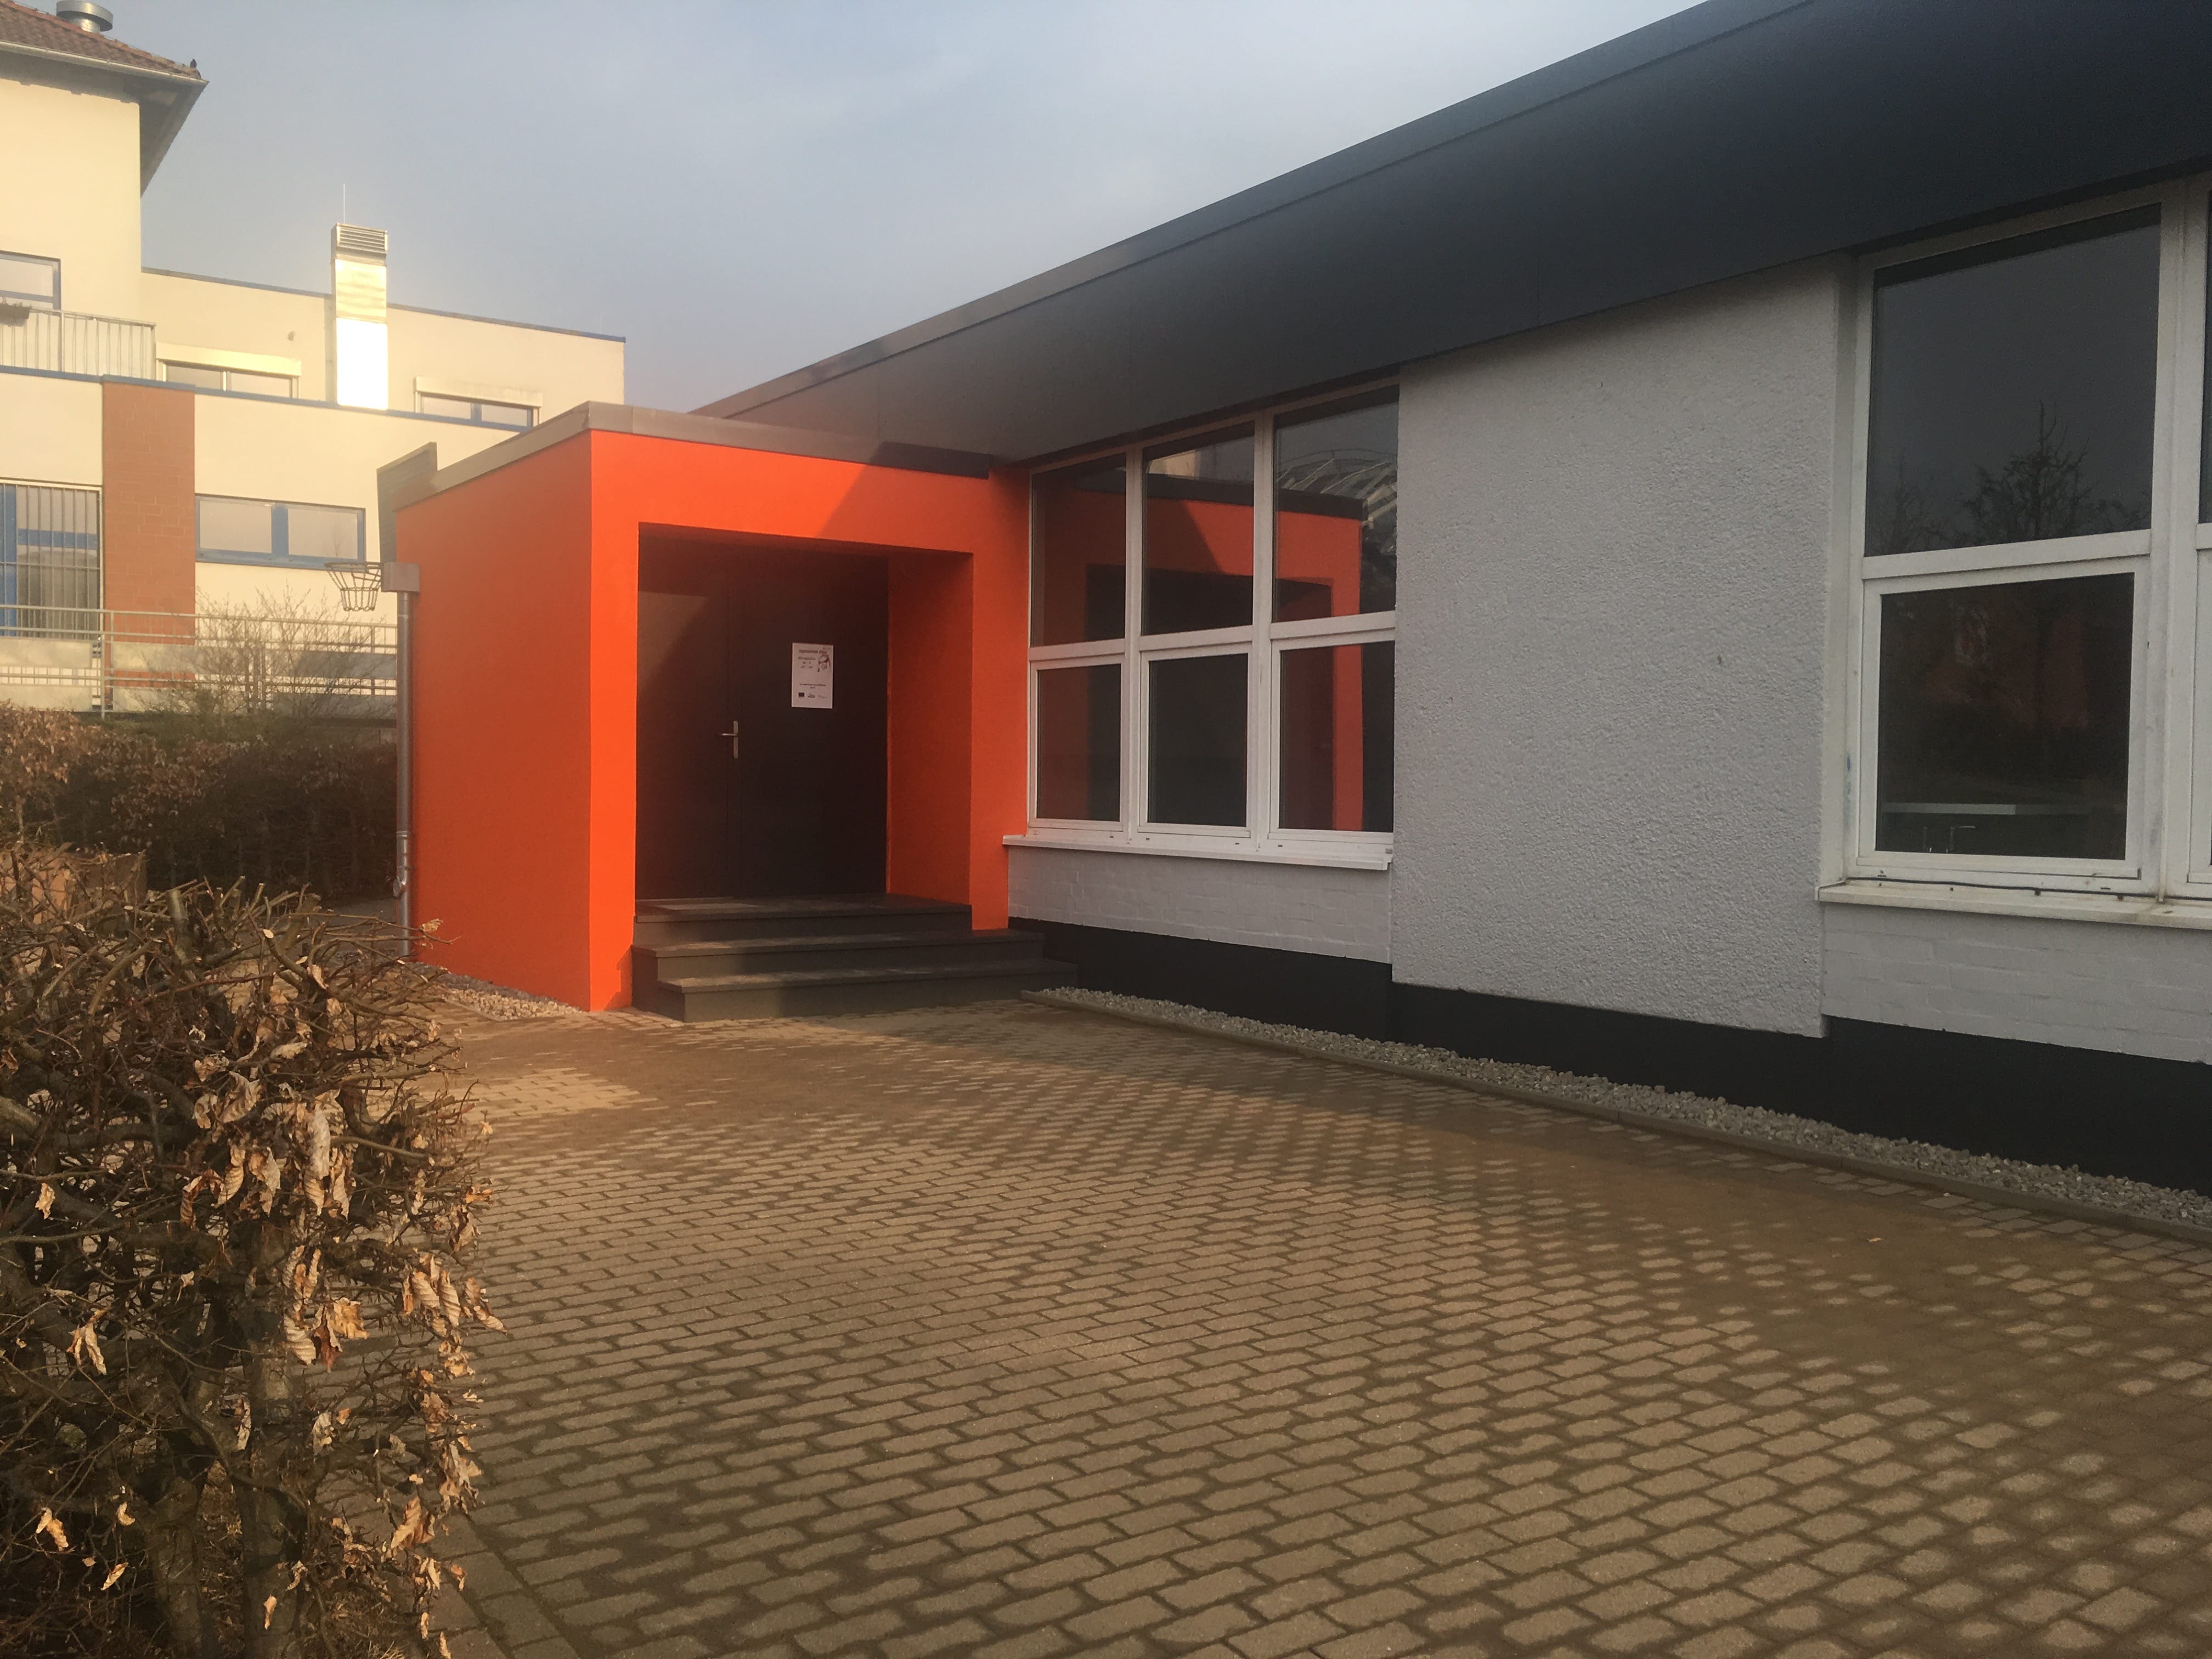 Projekt in Wismar, gebaut wurde eine Jugendtreff als Sanierung, Bauvorhaben vom 01.02.2018